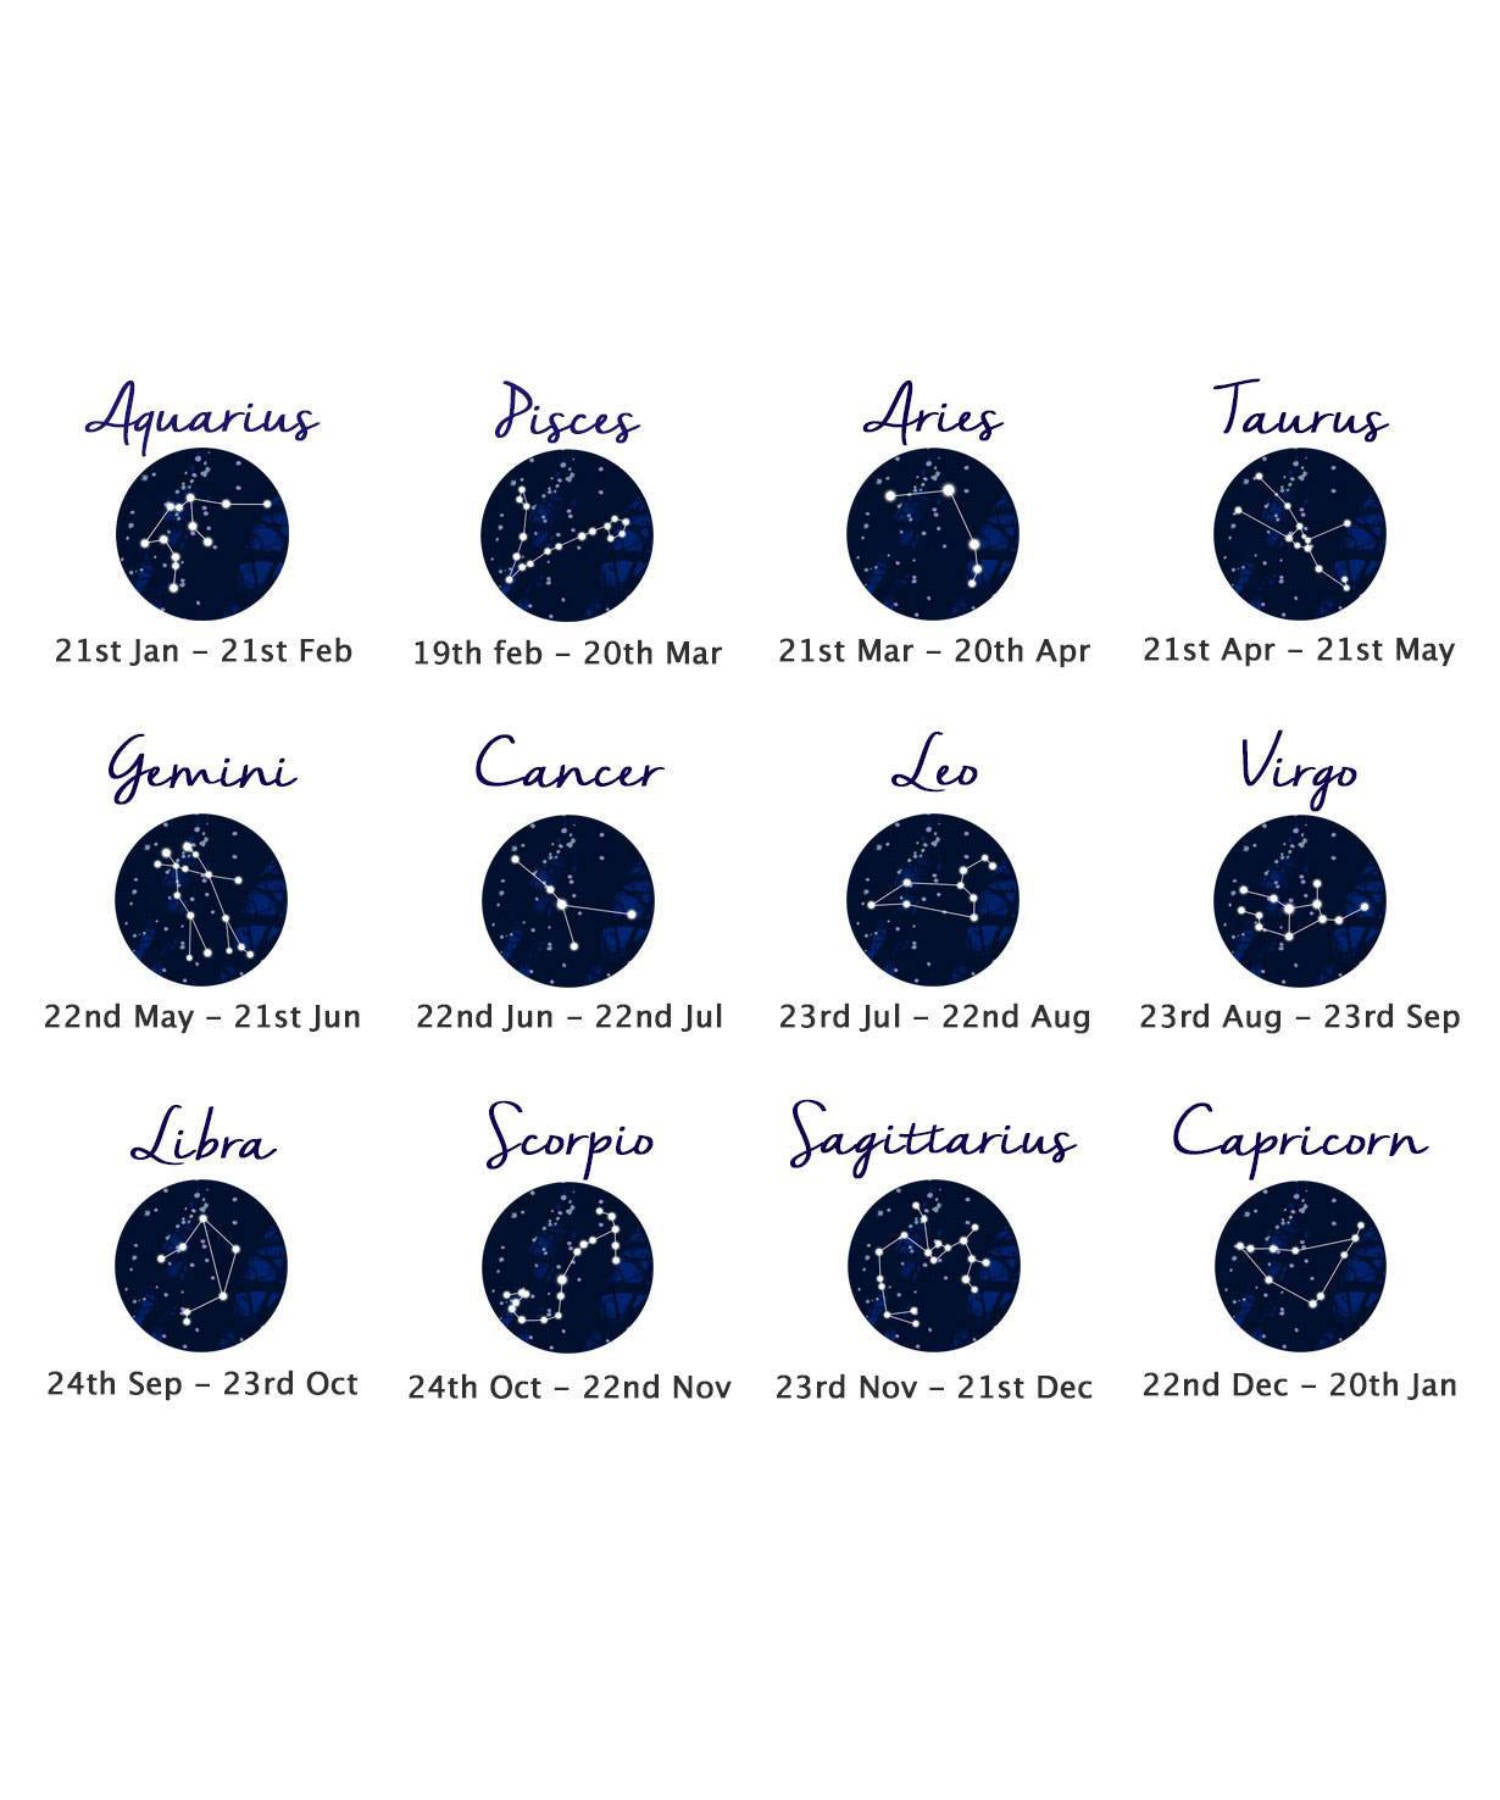 Cassiopi Zodiac Birth Signs Guide